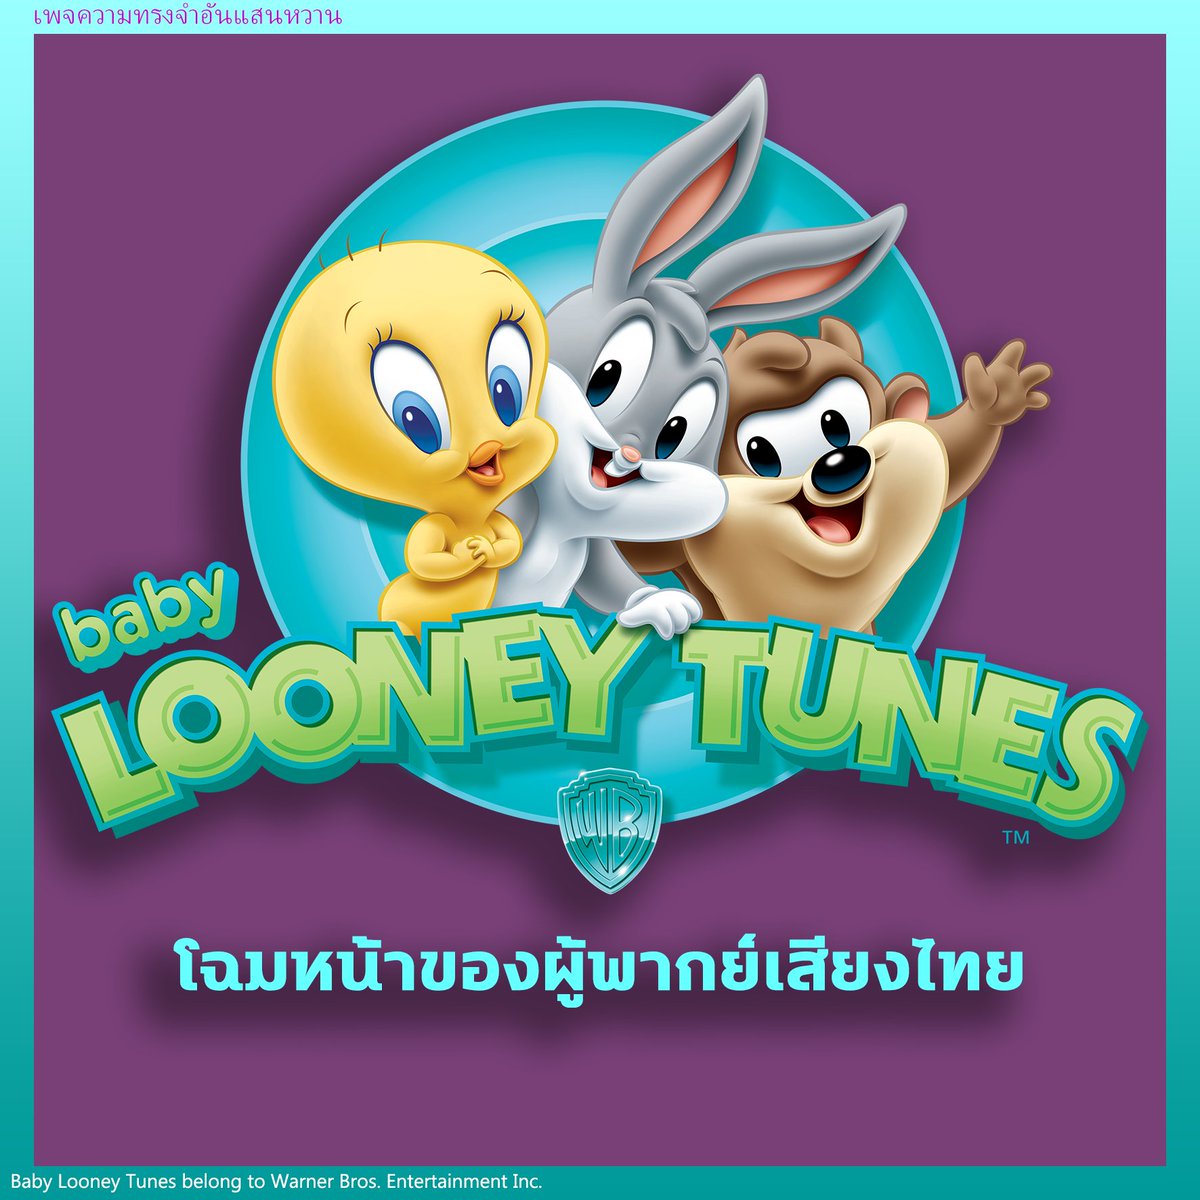 🐰โฉมหน้าของผู้พากย์เสียงไทย Baby Looney Tunes🐰

#looneytunes #babylooneytunes #boomerangthailand #warnerbros #cartoonnetwork #นักพากย์ #นักพากย์เสียงไทย #นักพากย์การ์ตูน #การ์ตูน #พากย์ไทย #คนรักพากย์ไทย #เบบี้ลูนี่ตูน #bugsbunny #daffyduck #lolabunny #thaidub #2000s